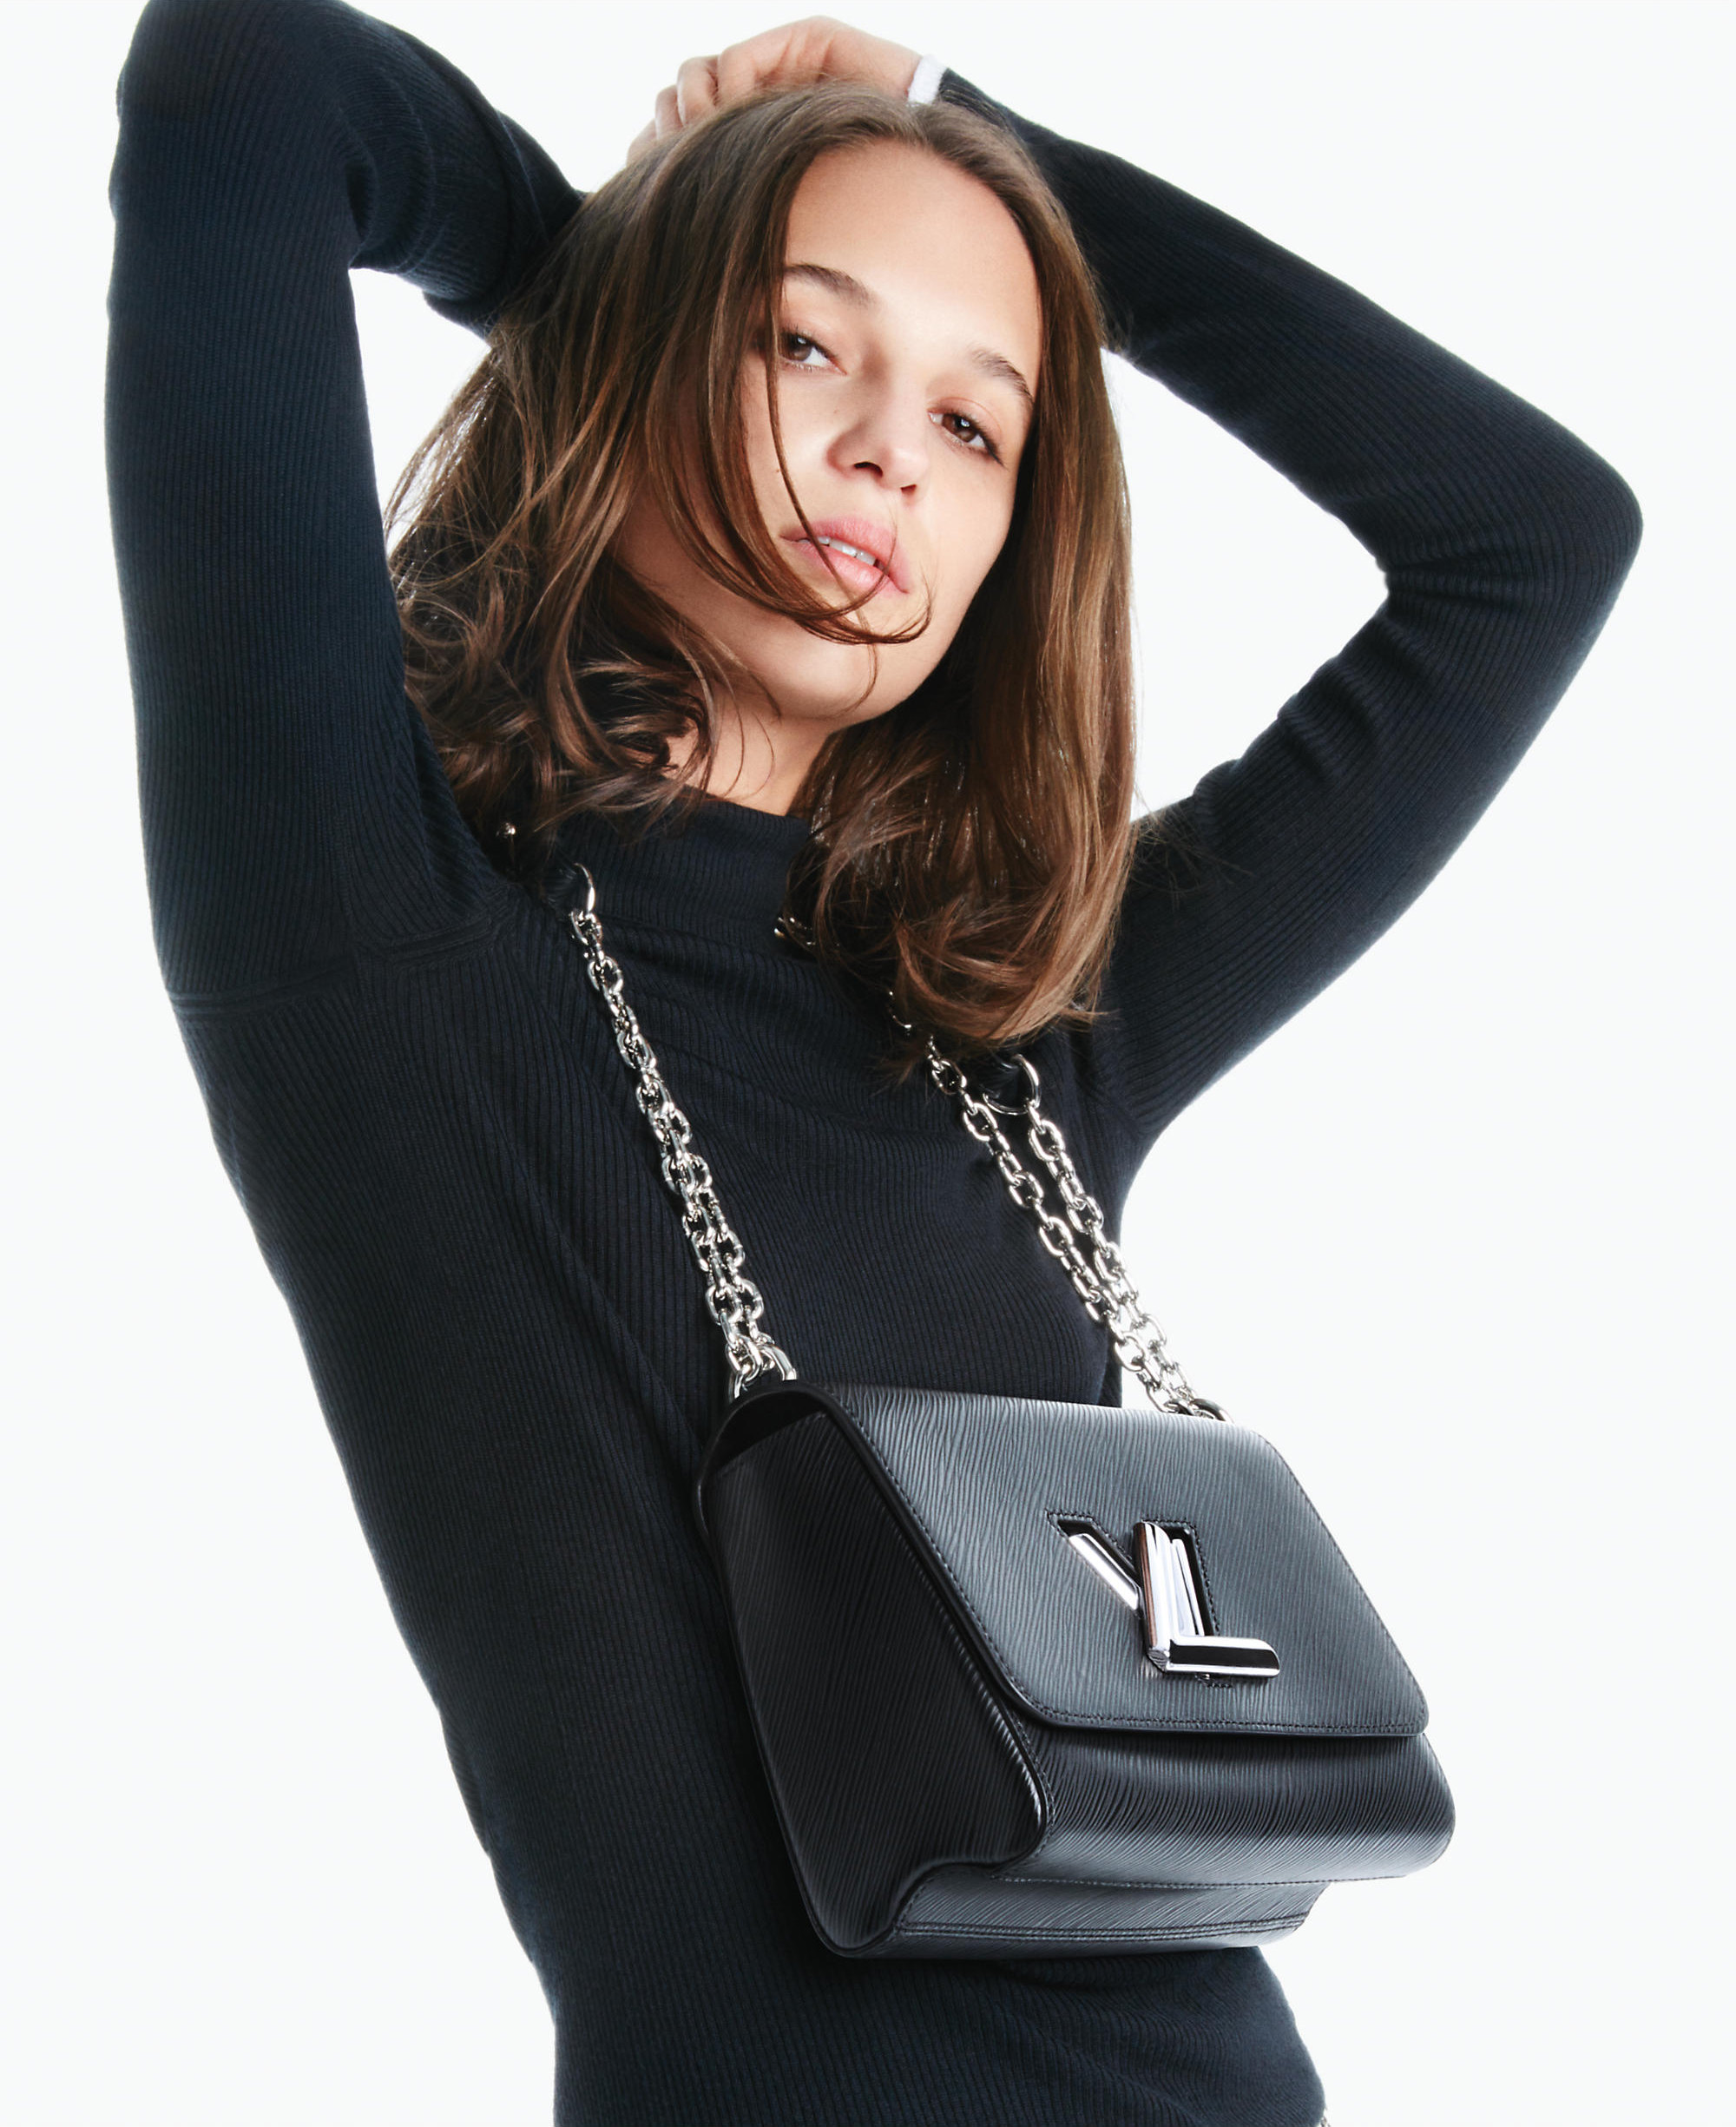 Alicia Vikander posa con “Twist” de Louis Vuitton